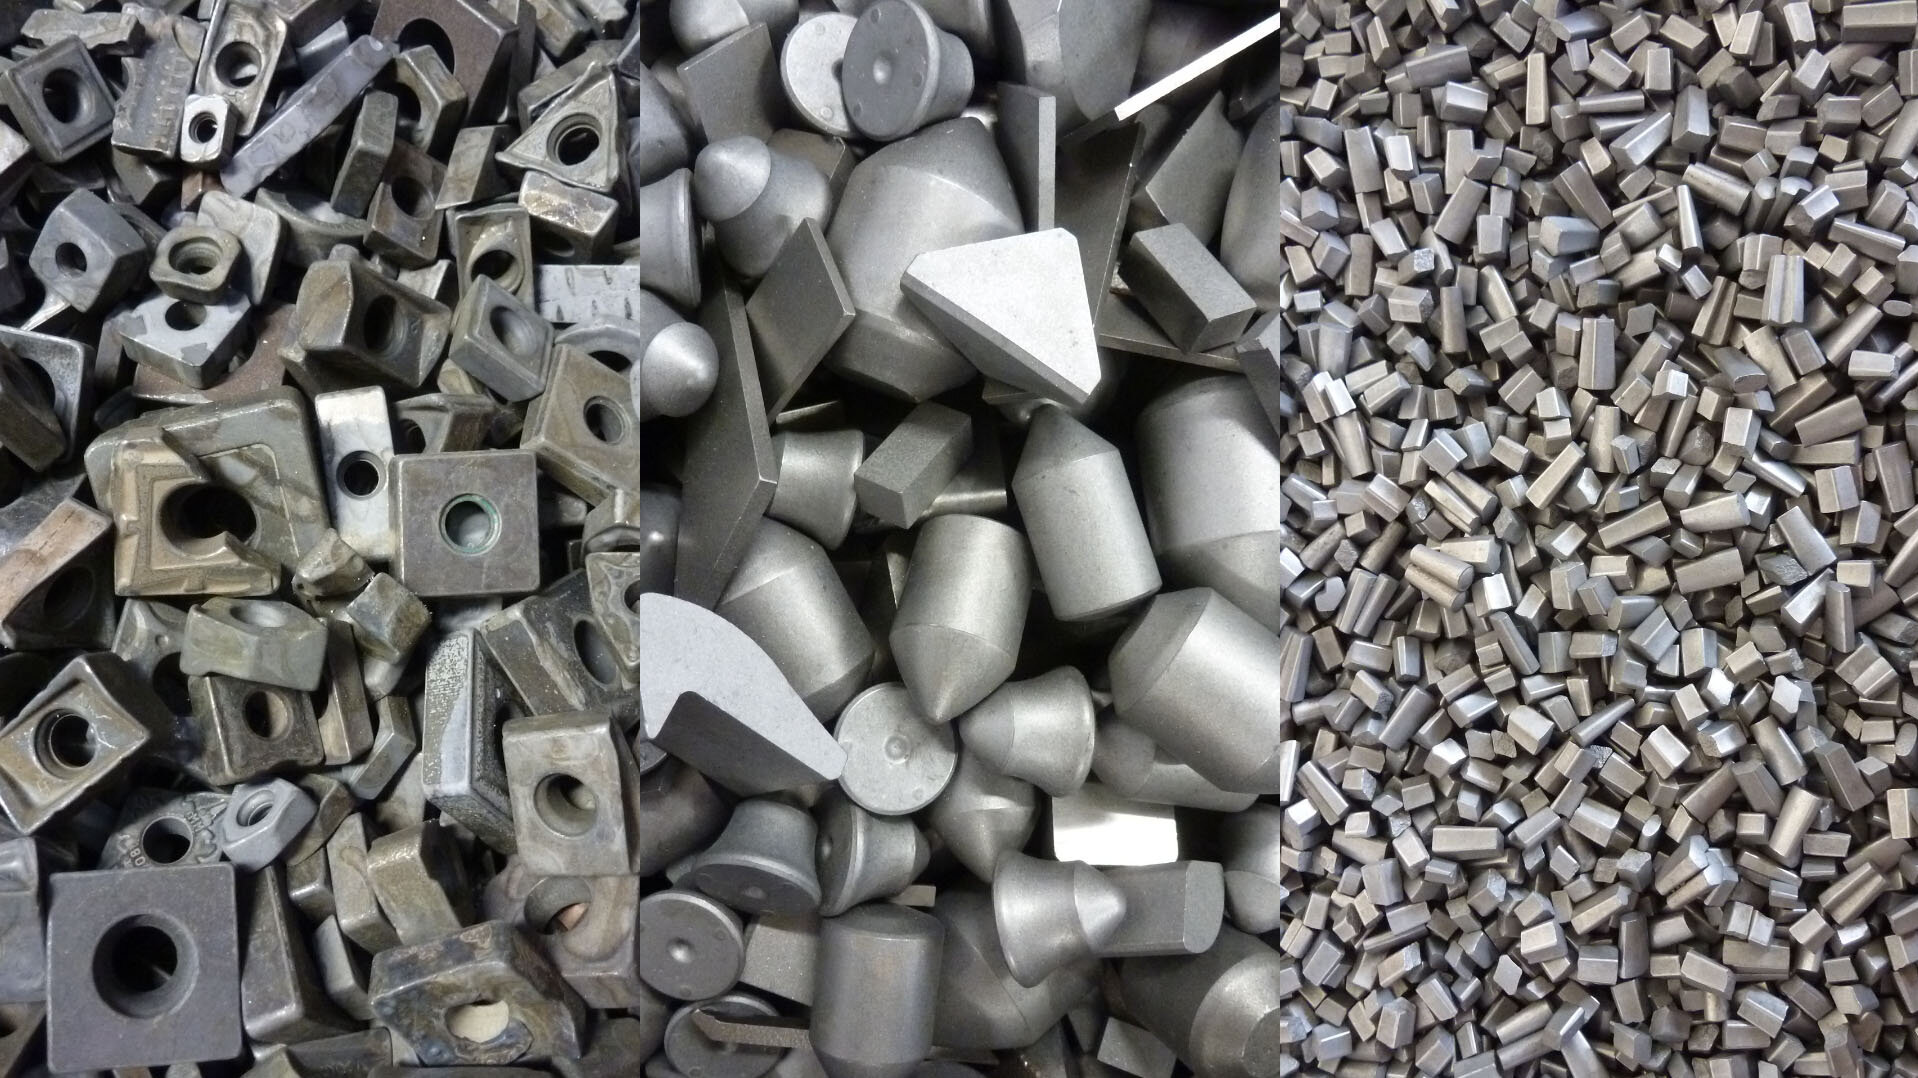 Tungsten carbide recycling